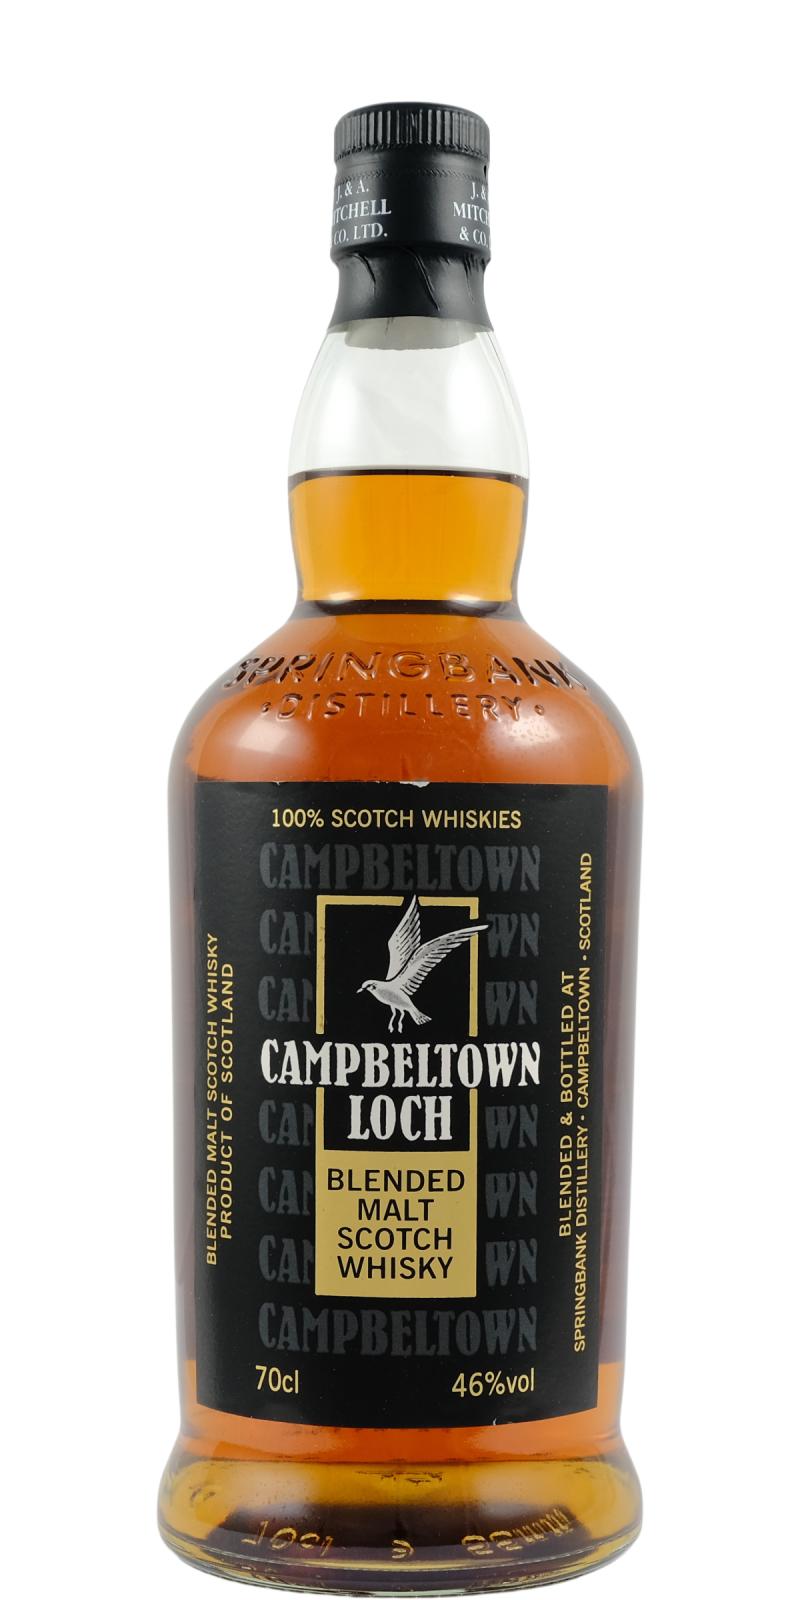 Campbeltown Loch Blended Malt Scotch Whisky